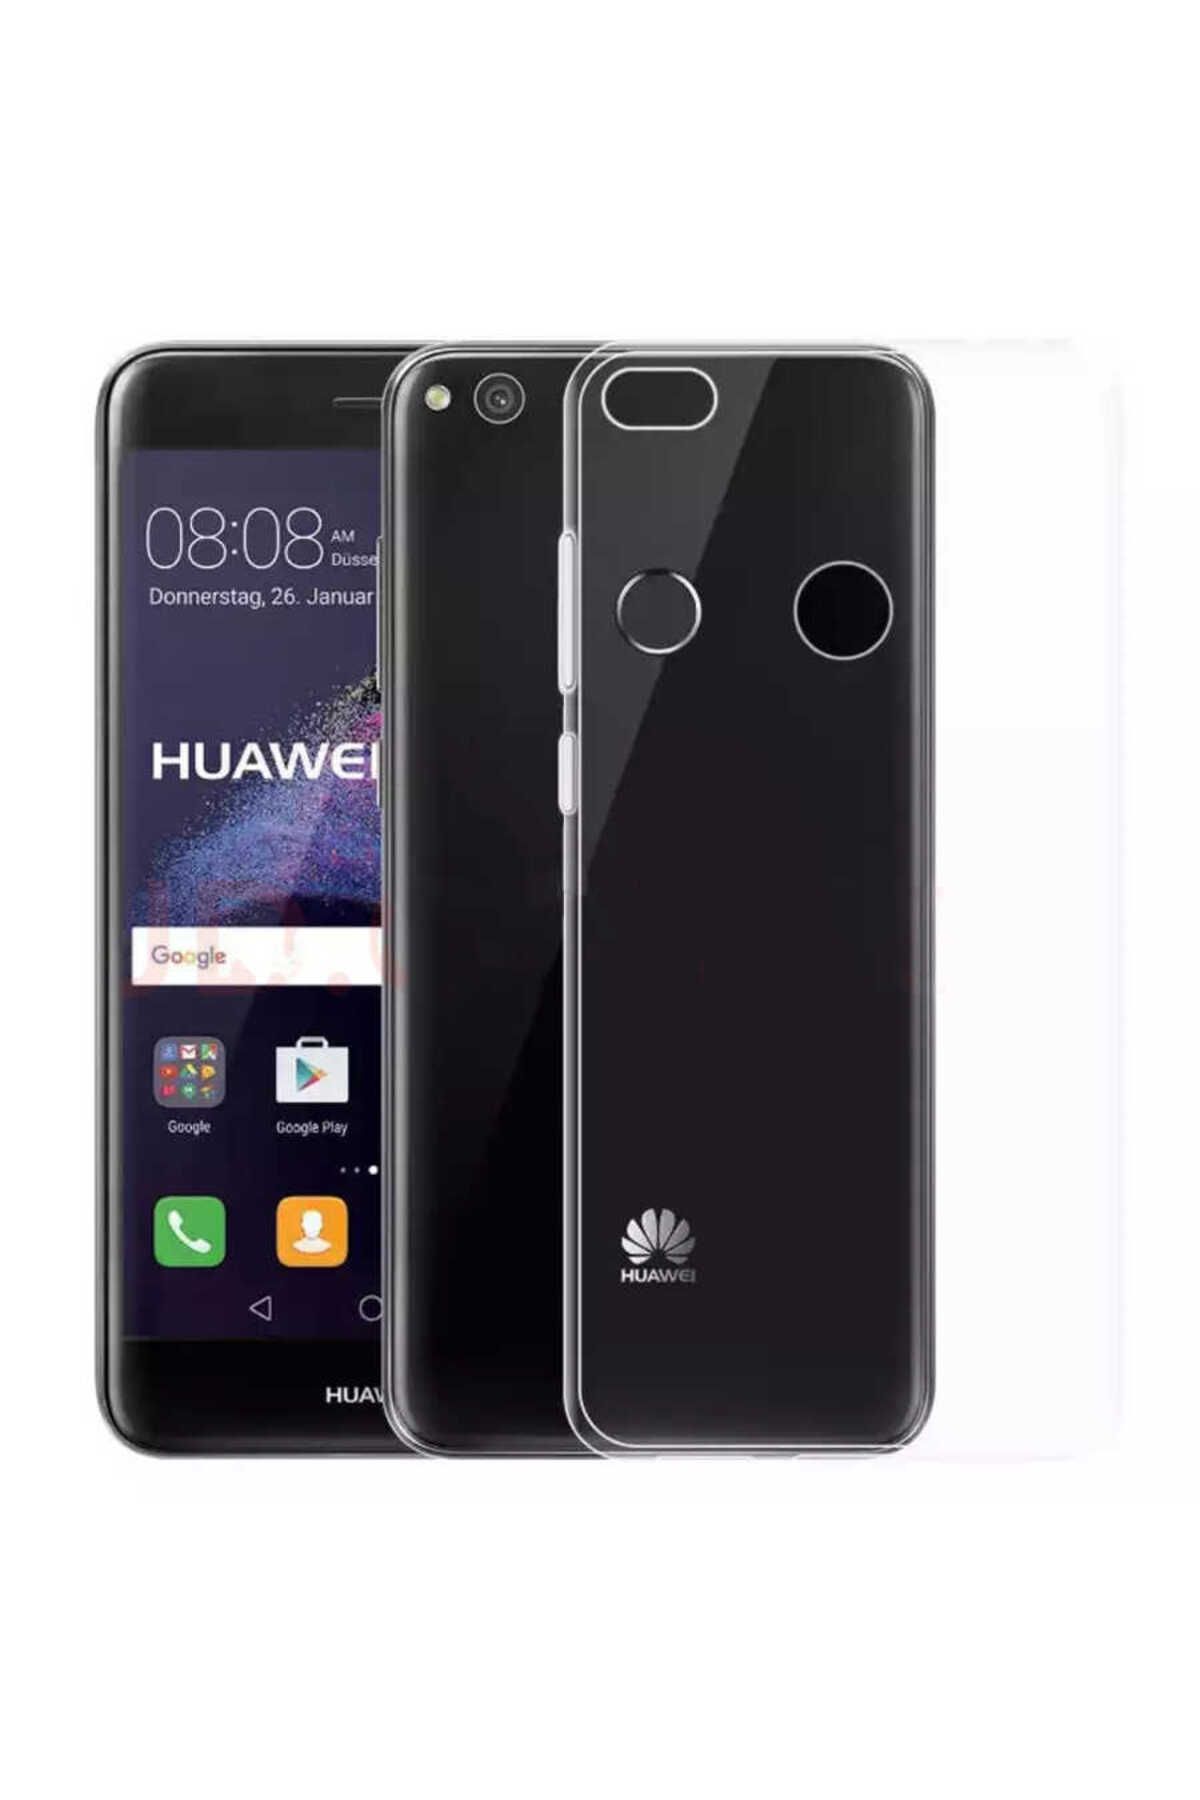 Megafox Teknoloji Huawei P8 Lite Uyumlu Kılıf Süper Silikon Kapak